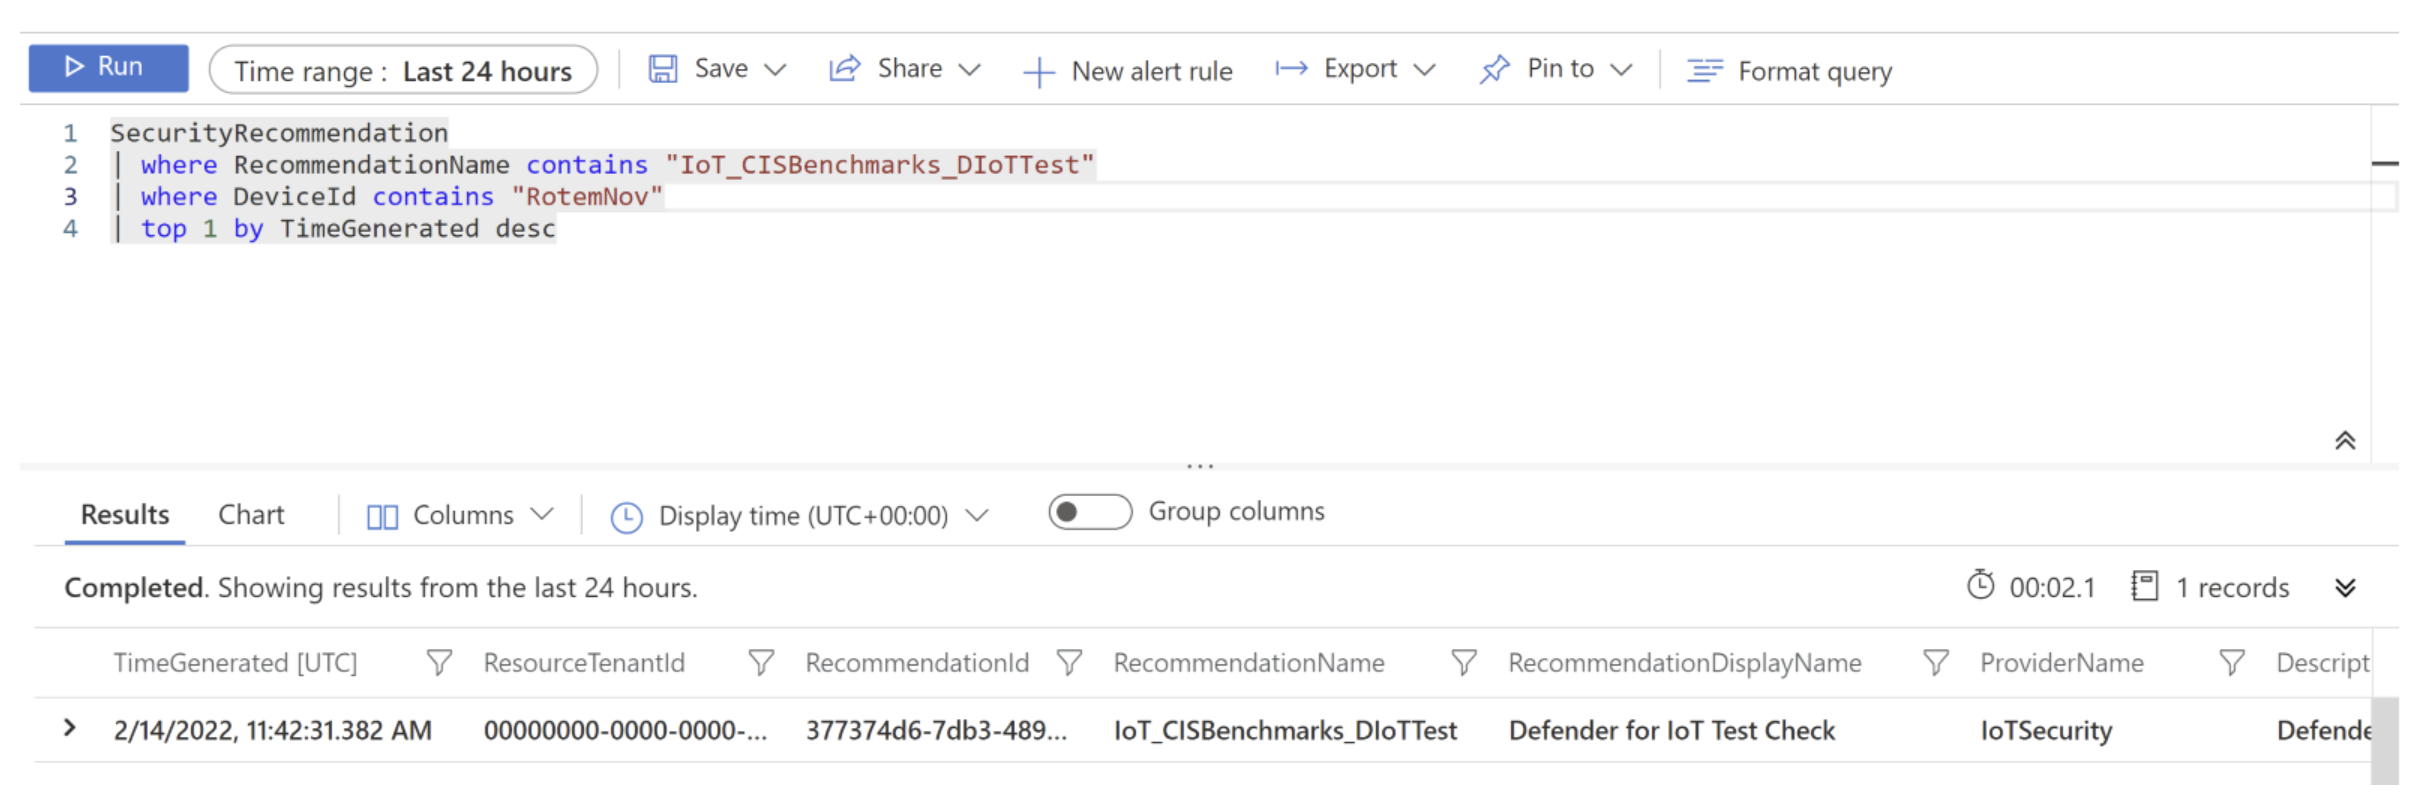 Capture d’écran de la requête IoT_CISBenchmarks_DIoTTest exécutée dans Log Analytics.